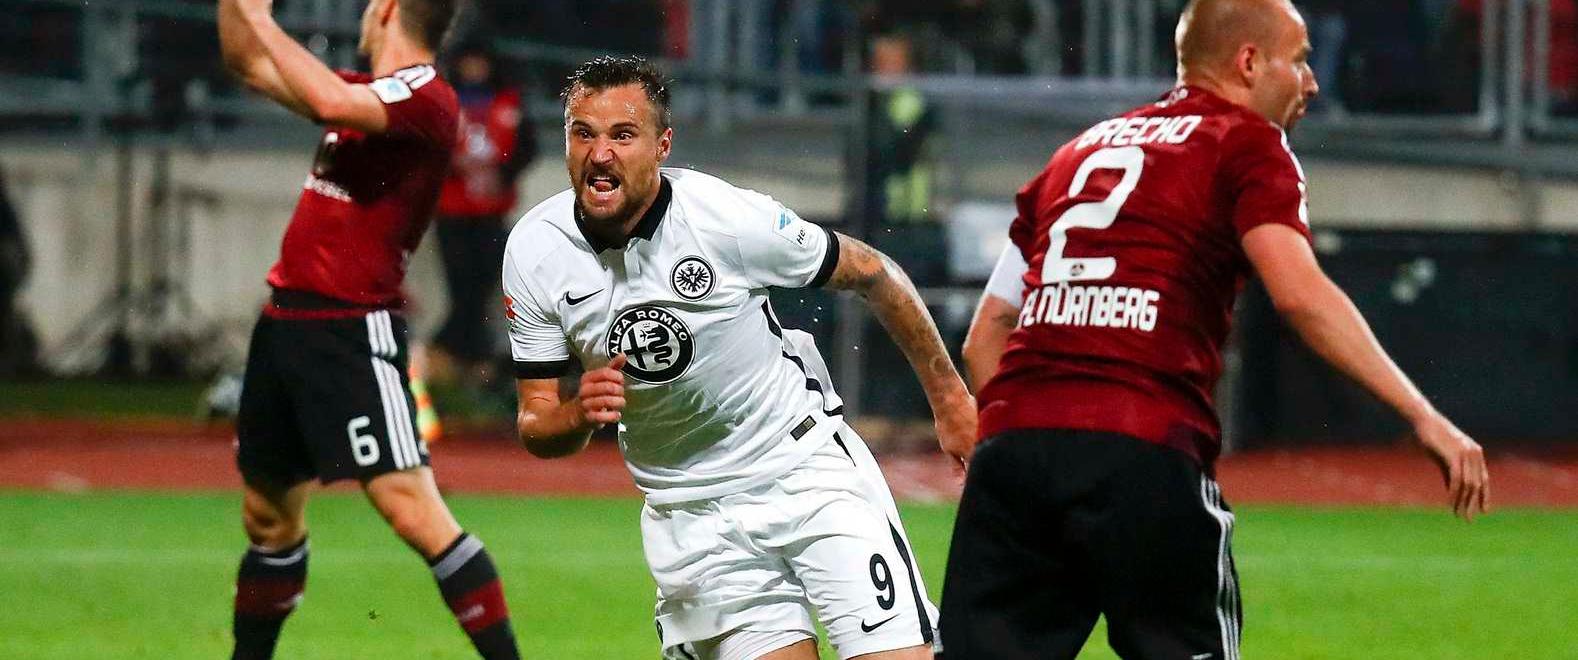 Haris Seferovic rettete die Eintracht durch sein Tor in der Relegation gegen den Club. Der Schweizer Angreifer bringt sich nun bei Ligakonkurrent Borussia Dortmund ins Gespräch.